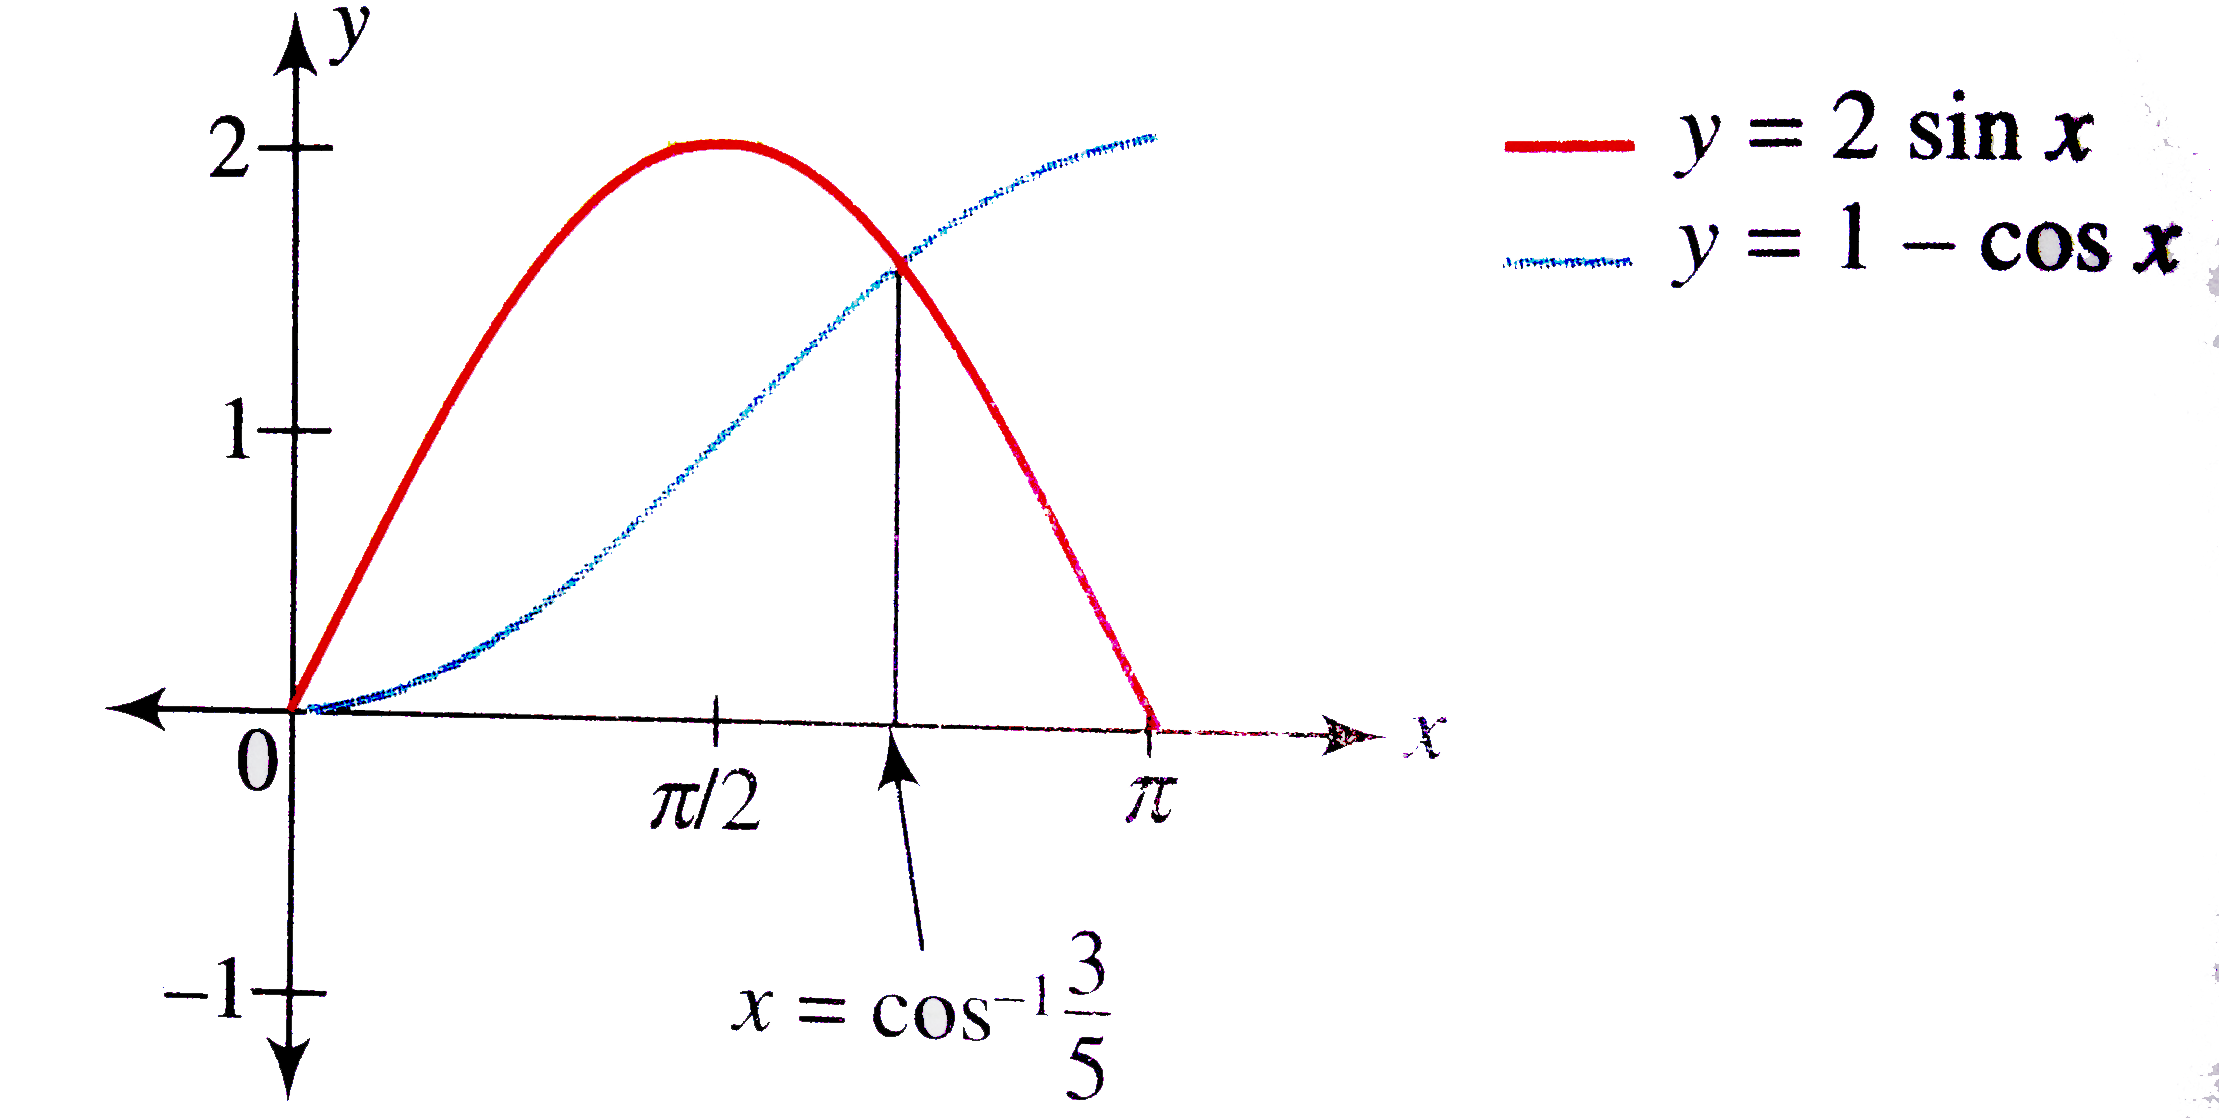 Draw The Graph Of F X Maximum 2 Sin X 1 Cos X X In 0